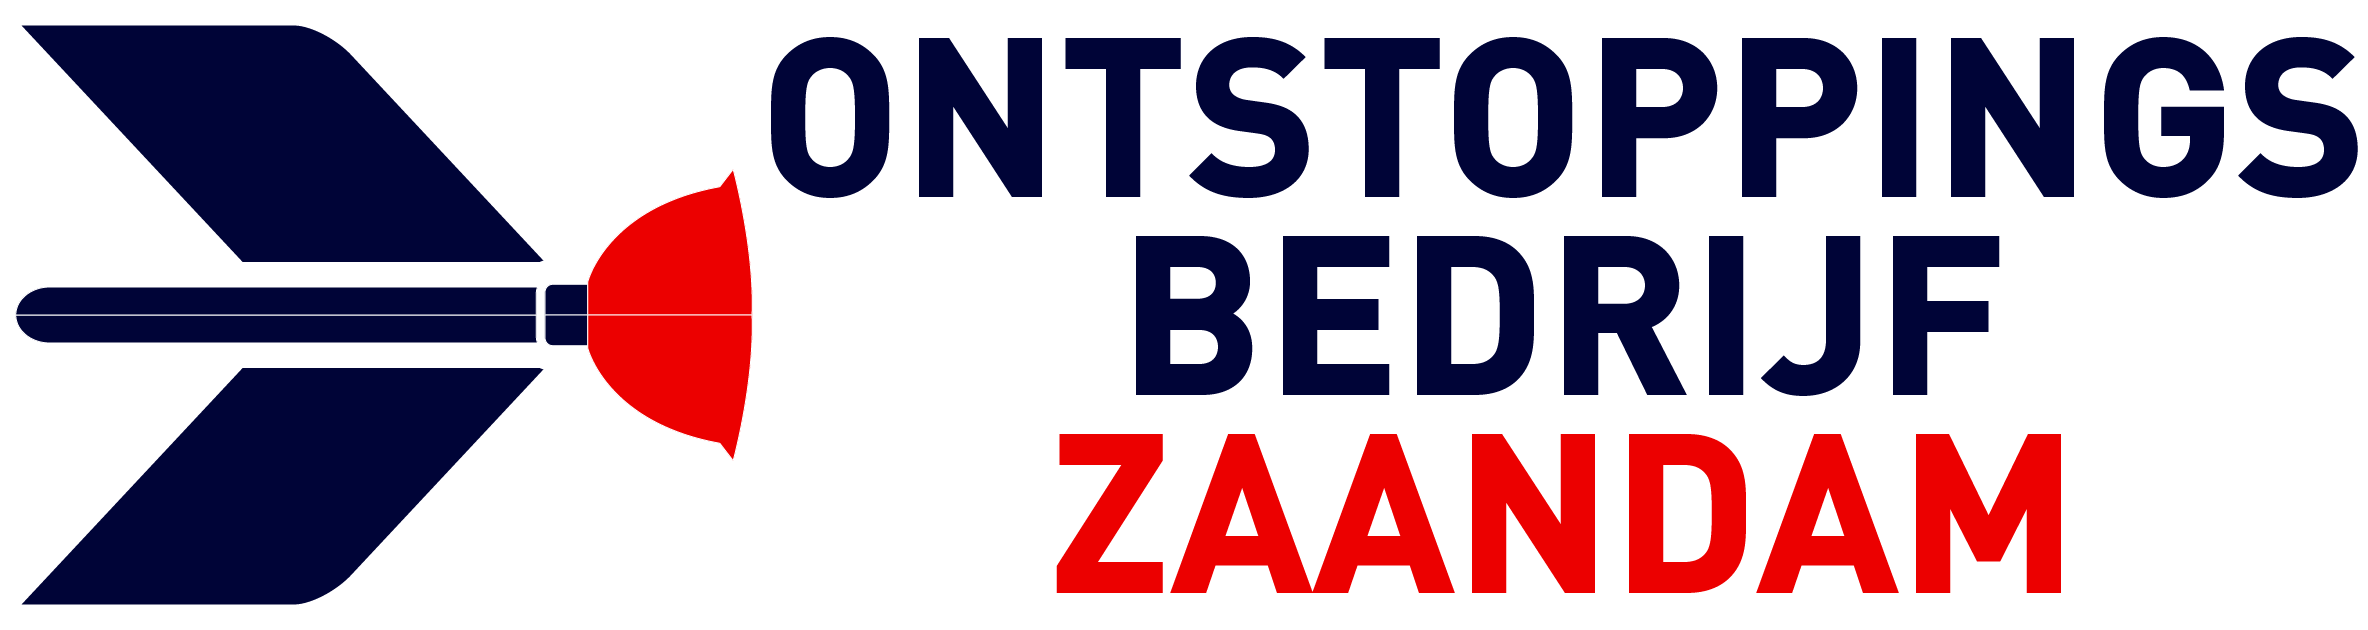 Ontstoppingsbedrijf Zaandam logo